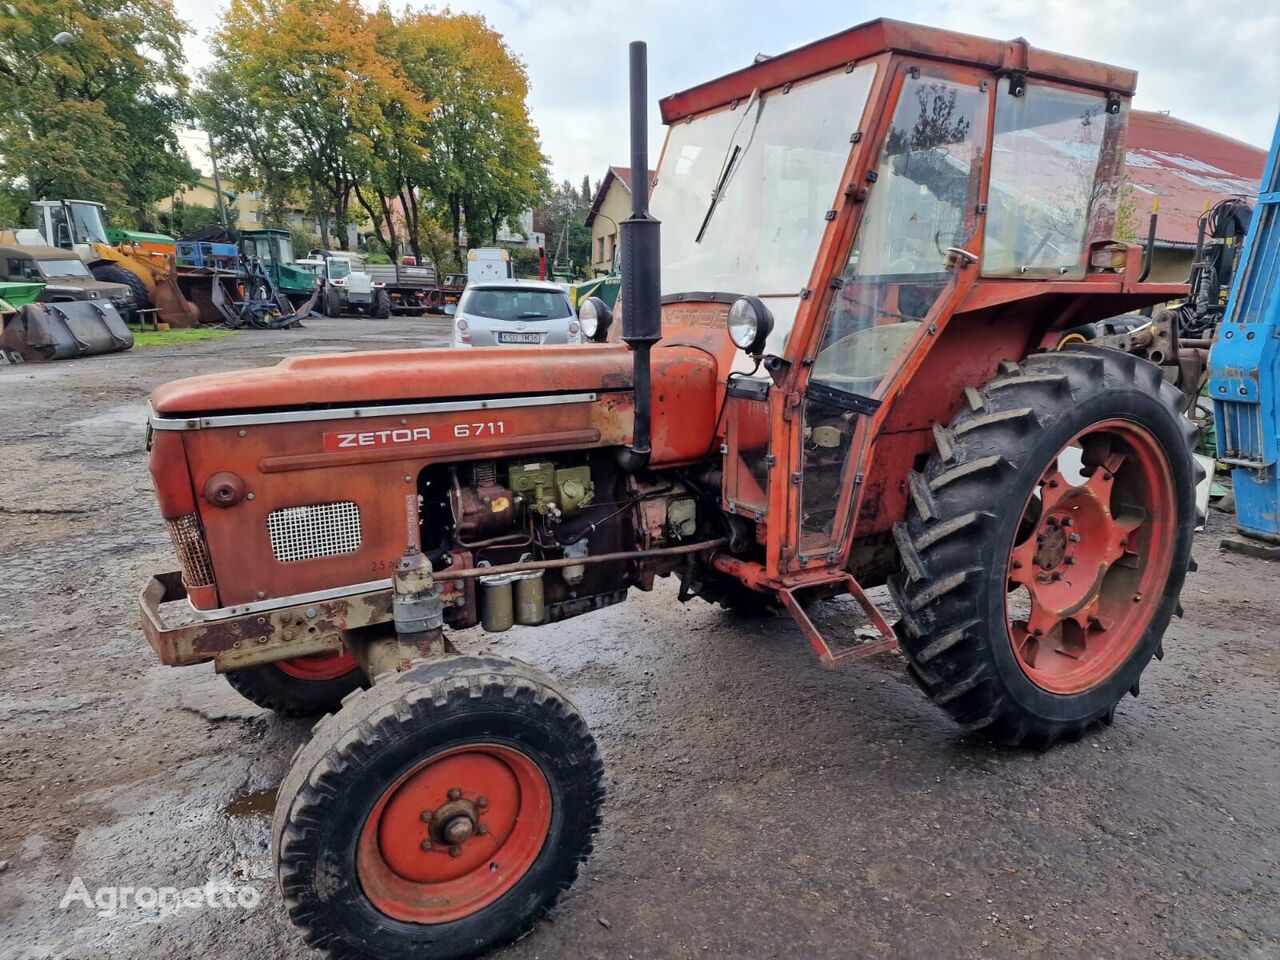 Zetor 6711 traktor på hjul